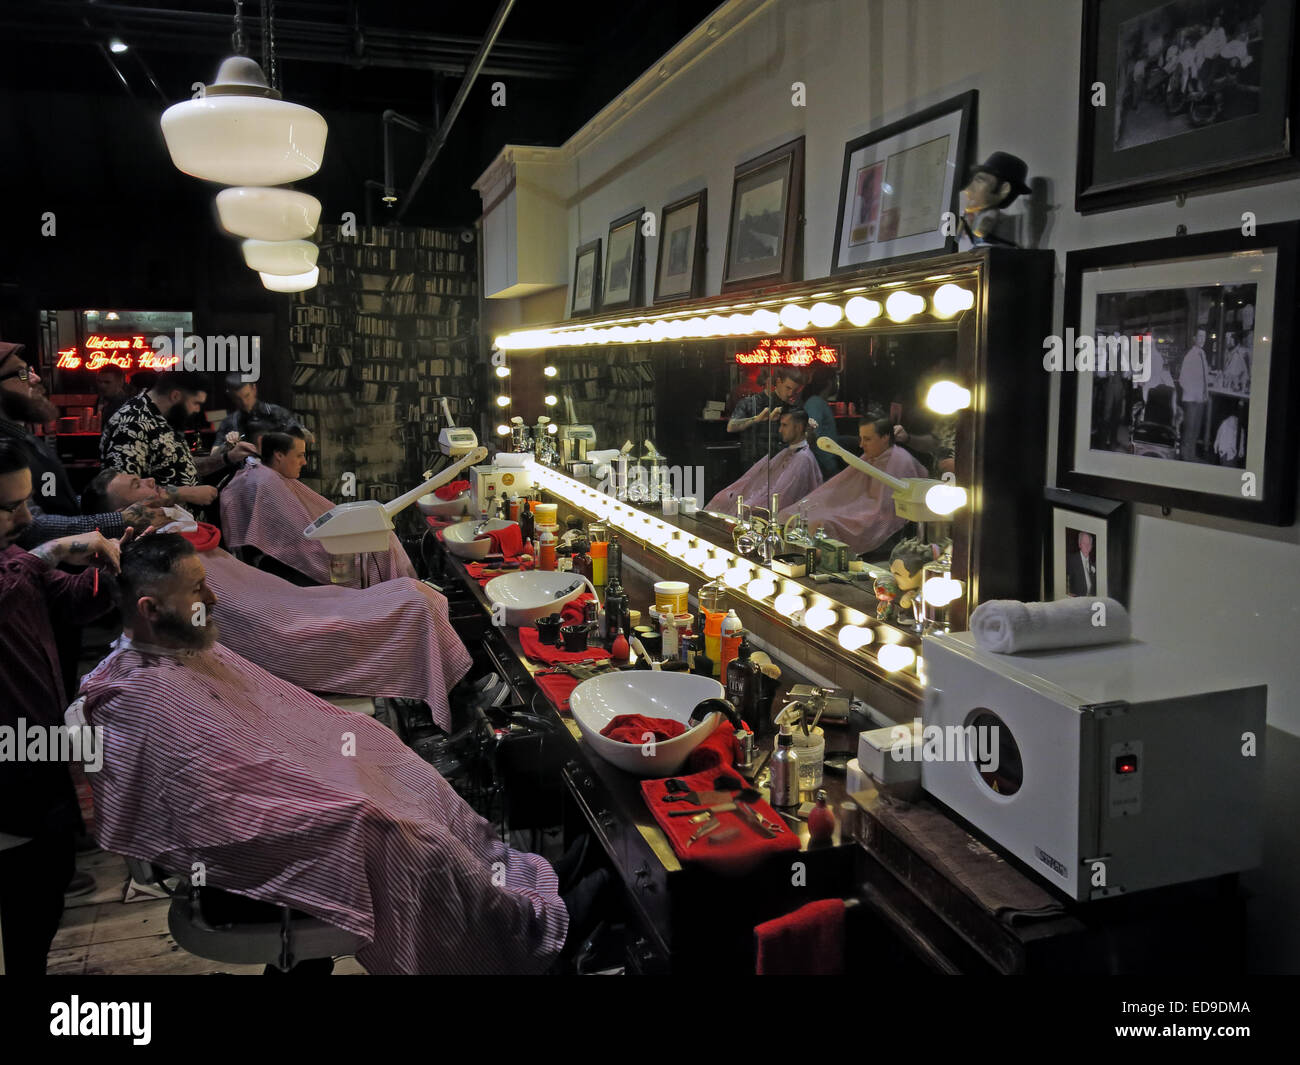 Salon de coiffure traditionnel, Barton Arcade, centre de Manchester, ville d'Angleterre, Royaume-Uni Banque D'Images